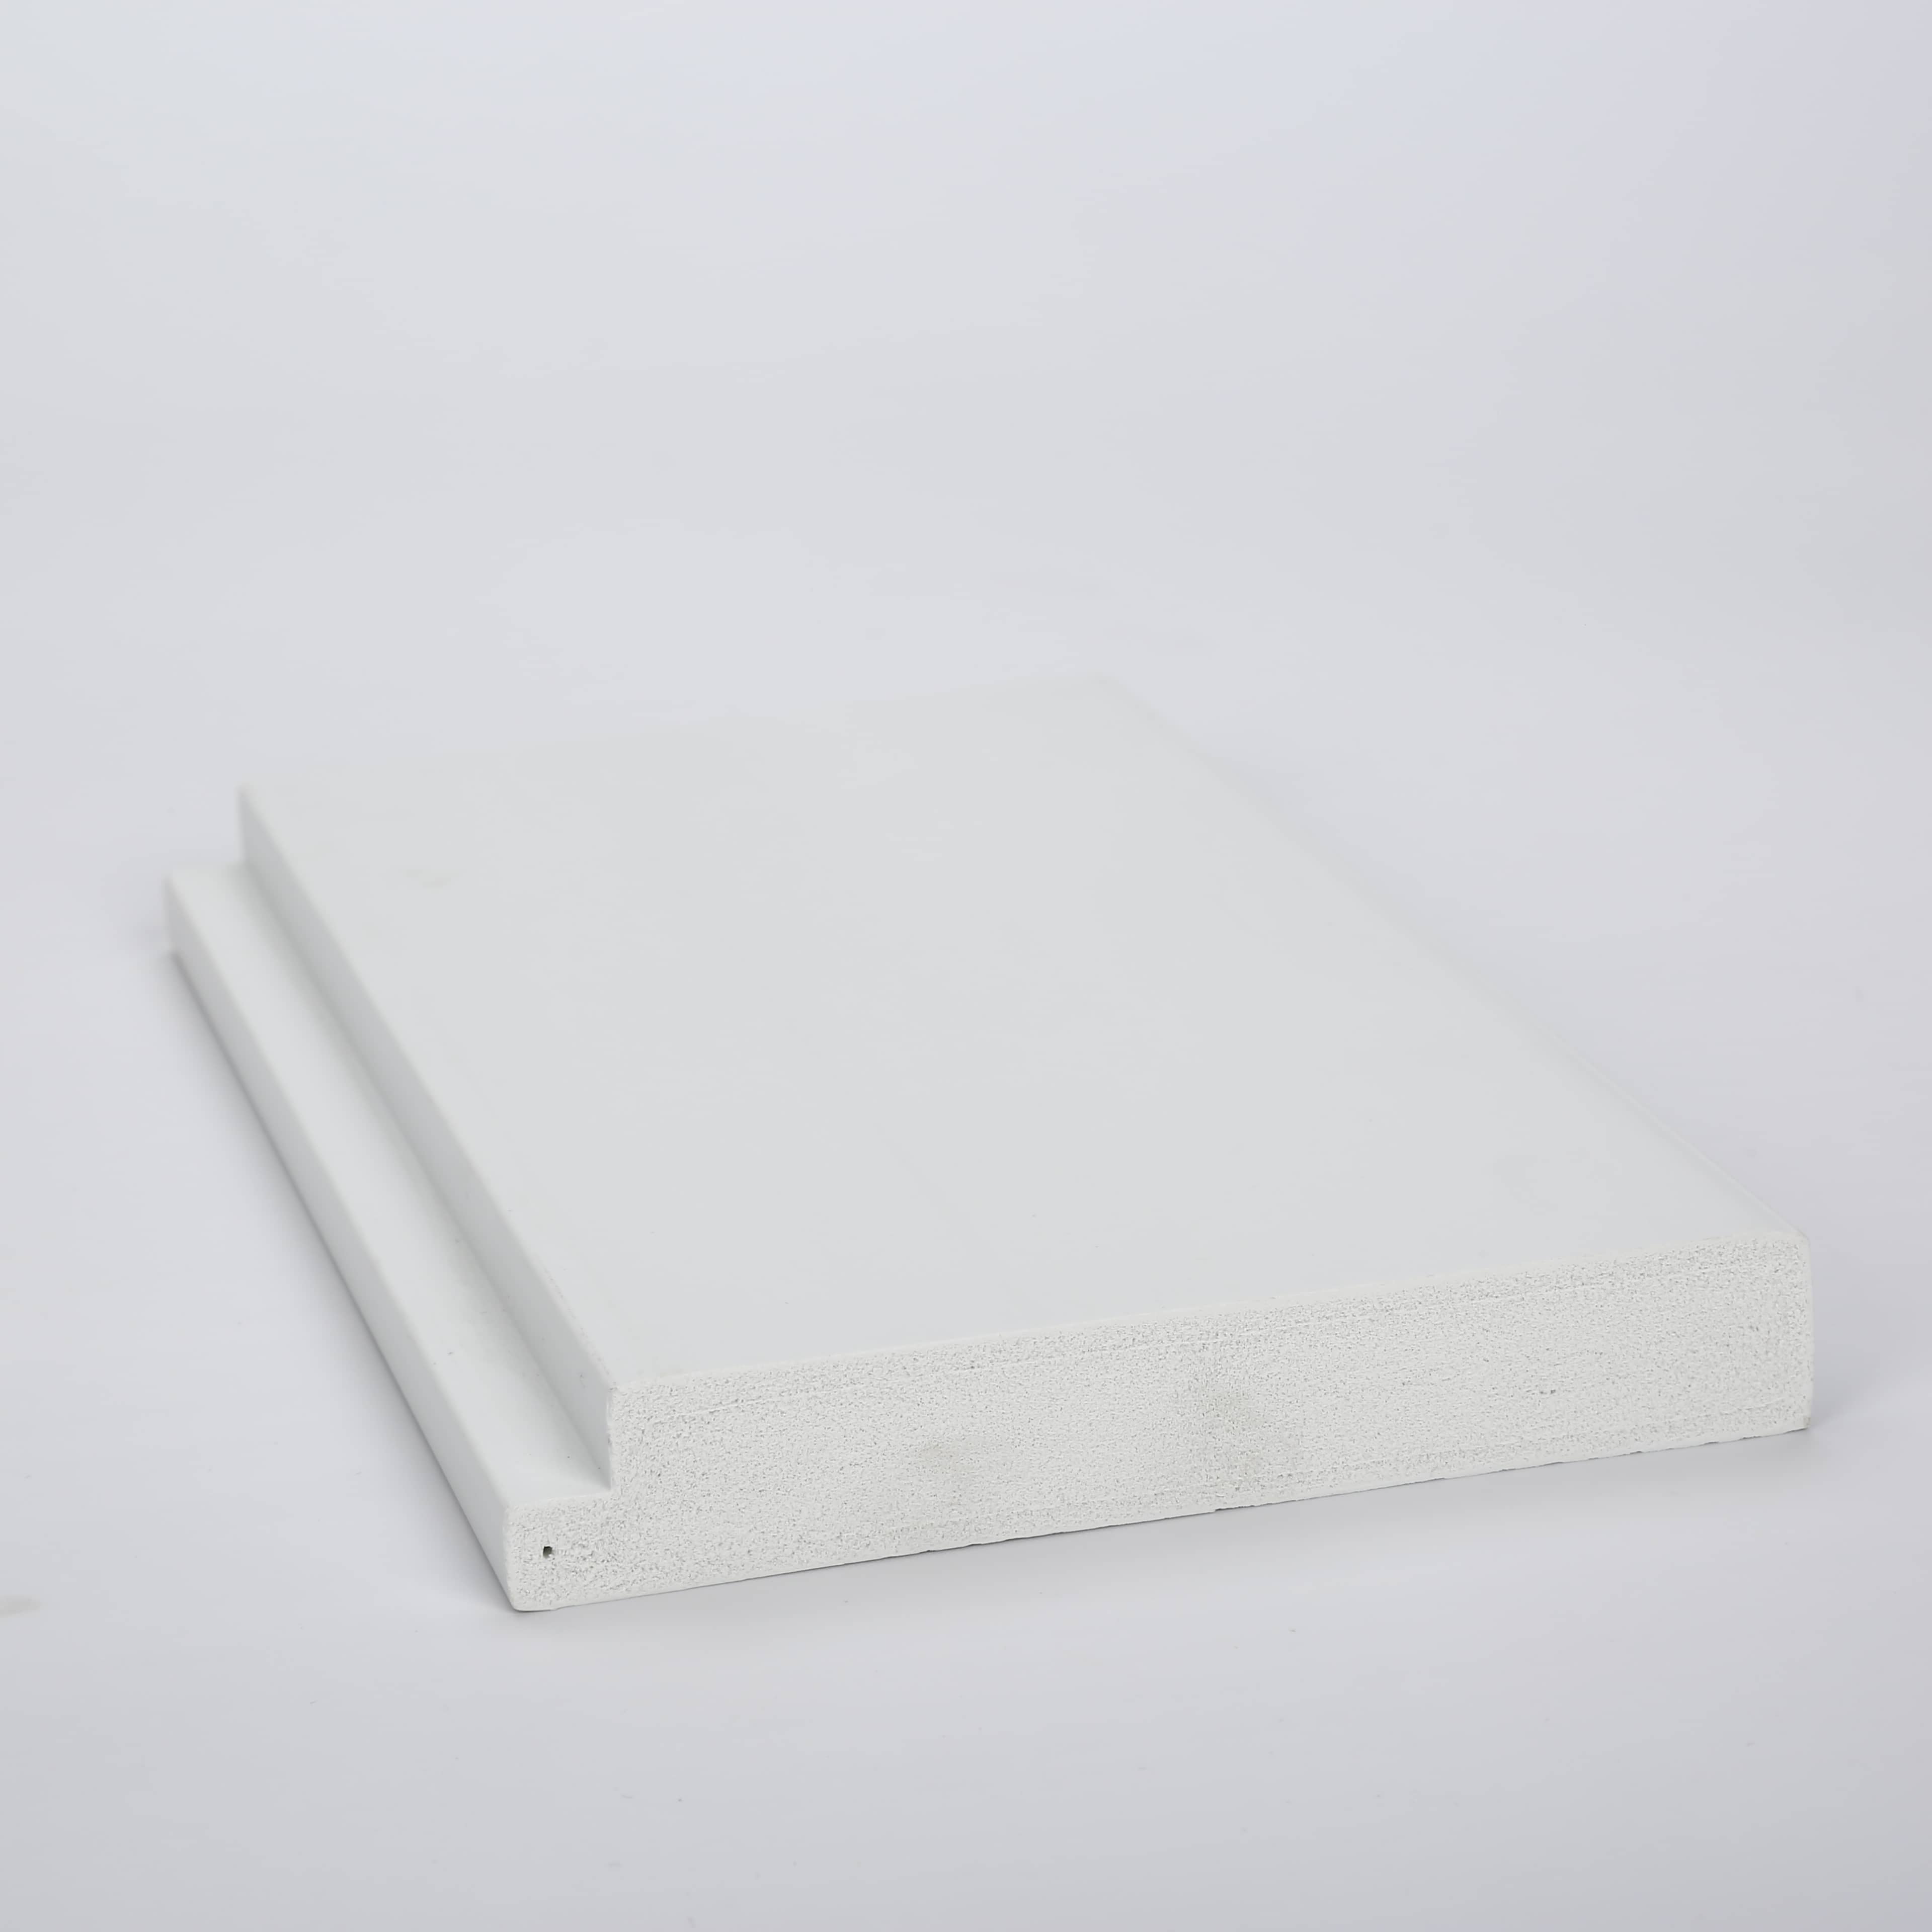 Cellular PVC Foam Profile